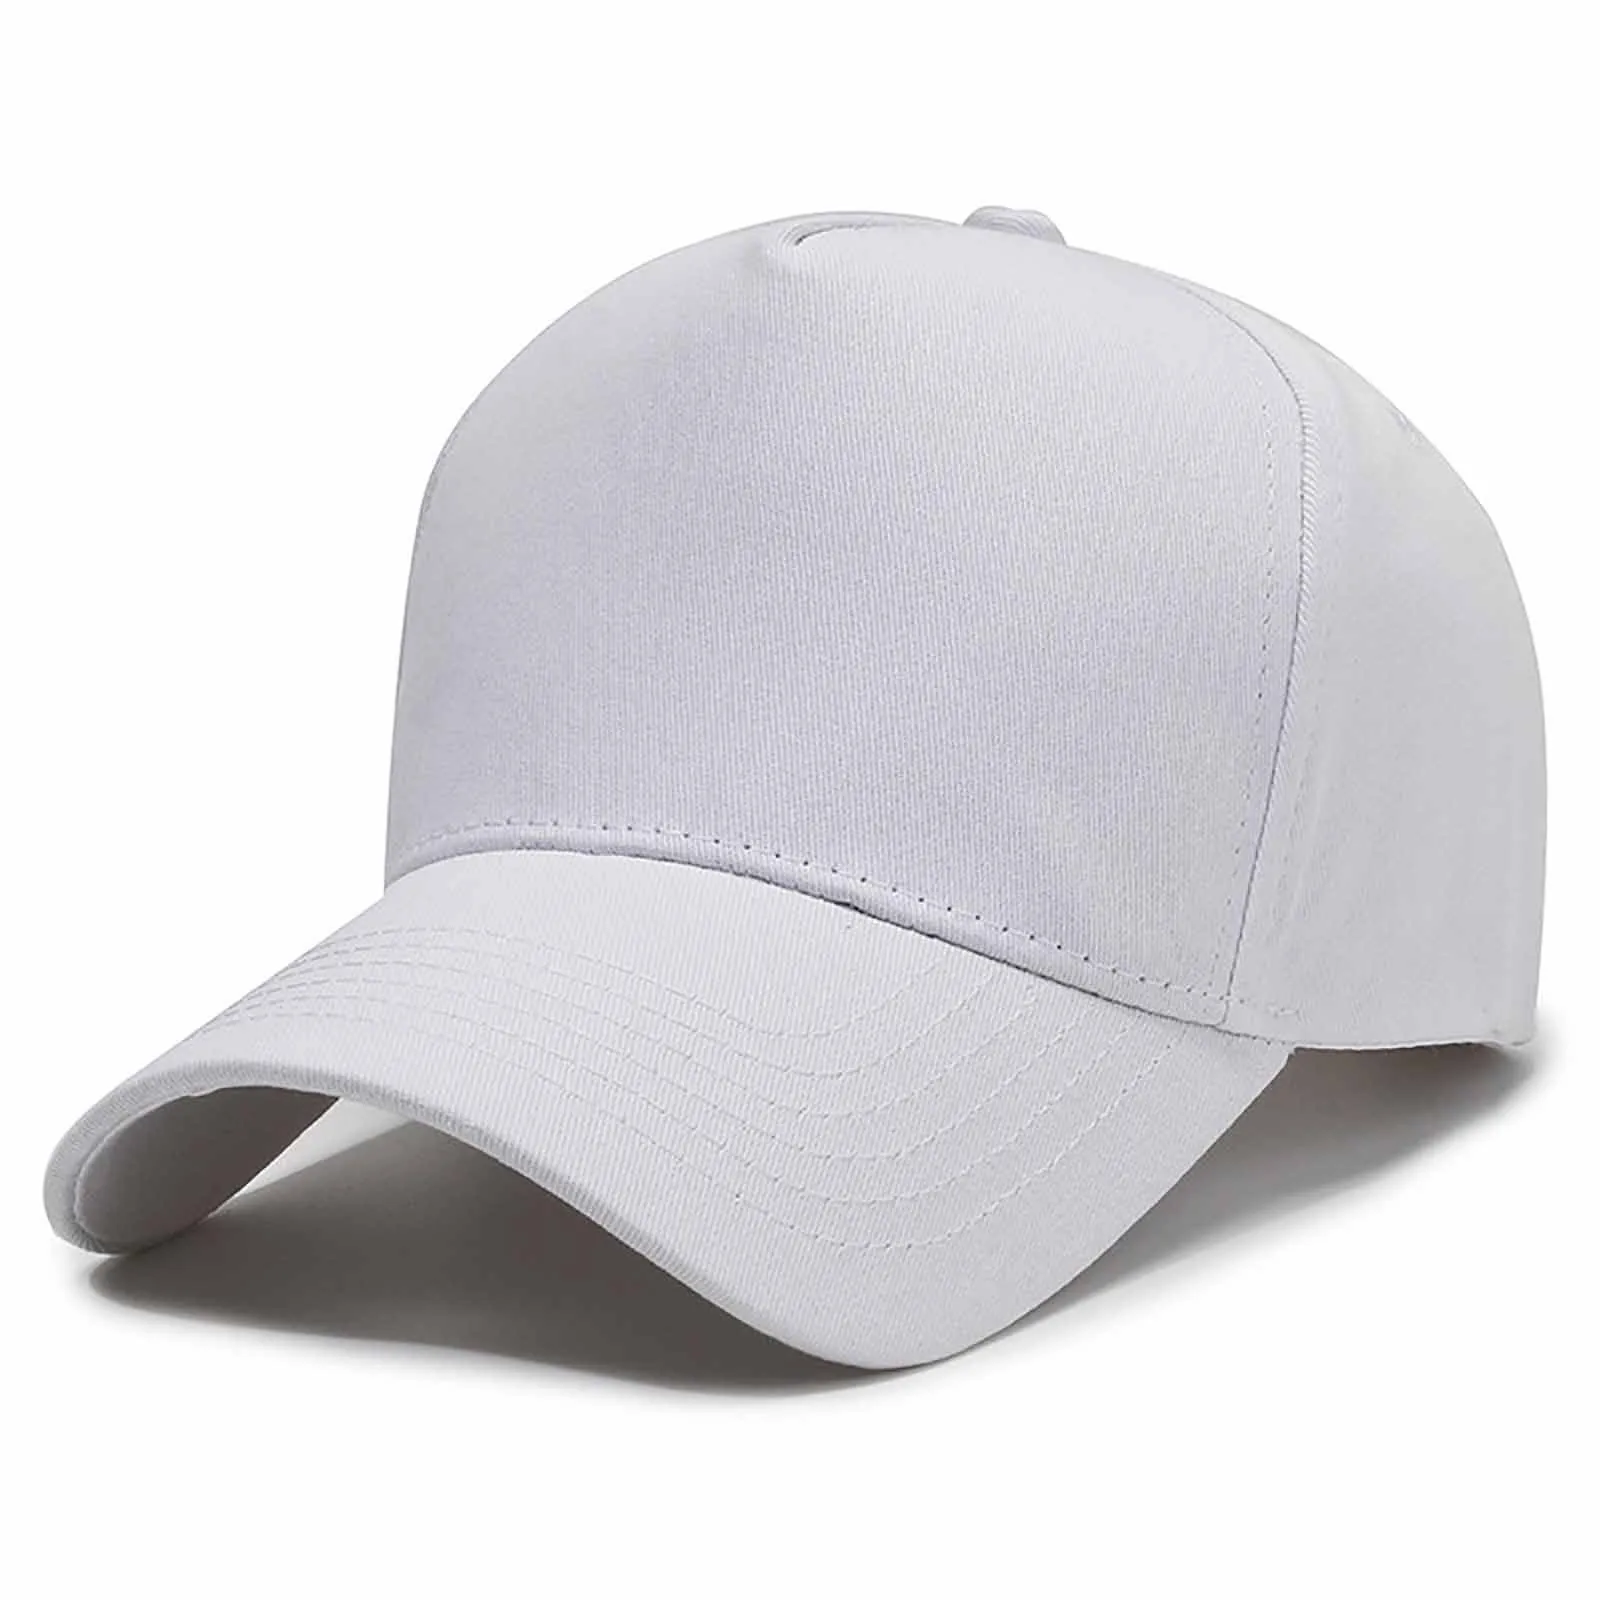 Открытый солнцезащитный козырек, Солнцезащитная шляпа, бейсболка Для мужчин и женщин, однотонная кепка, вентиляционный козырек Accord, шлем с внутренним козырьком